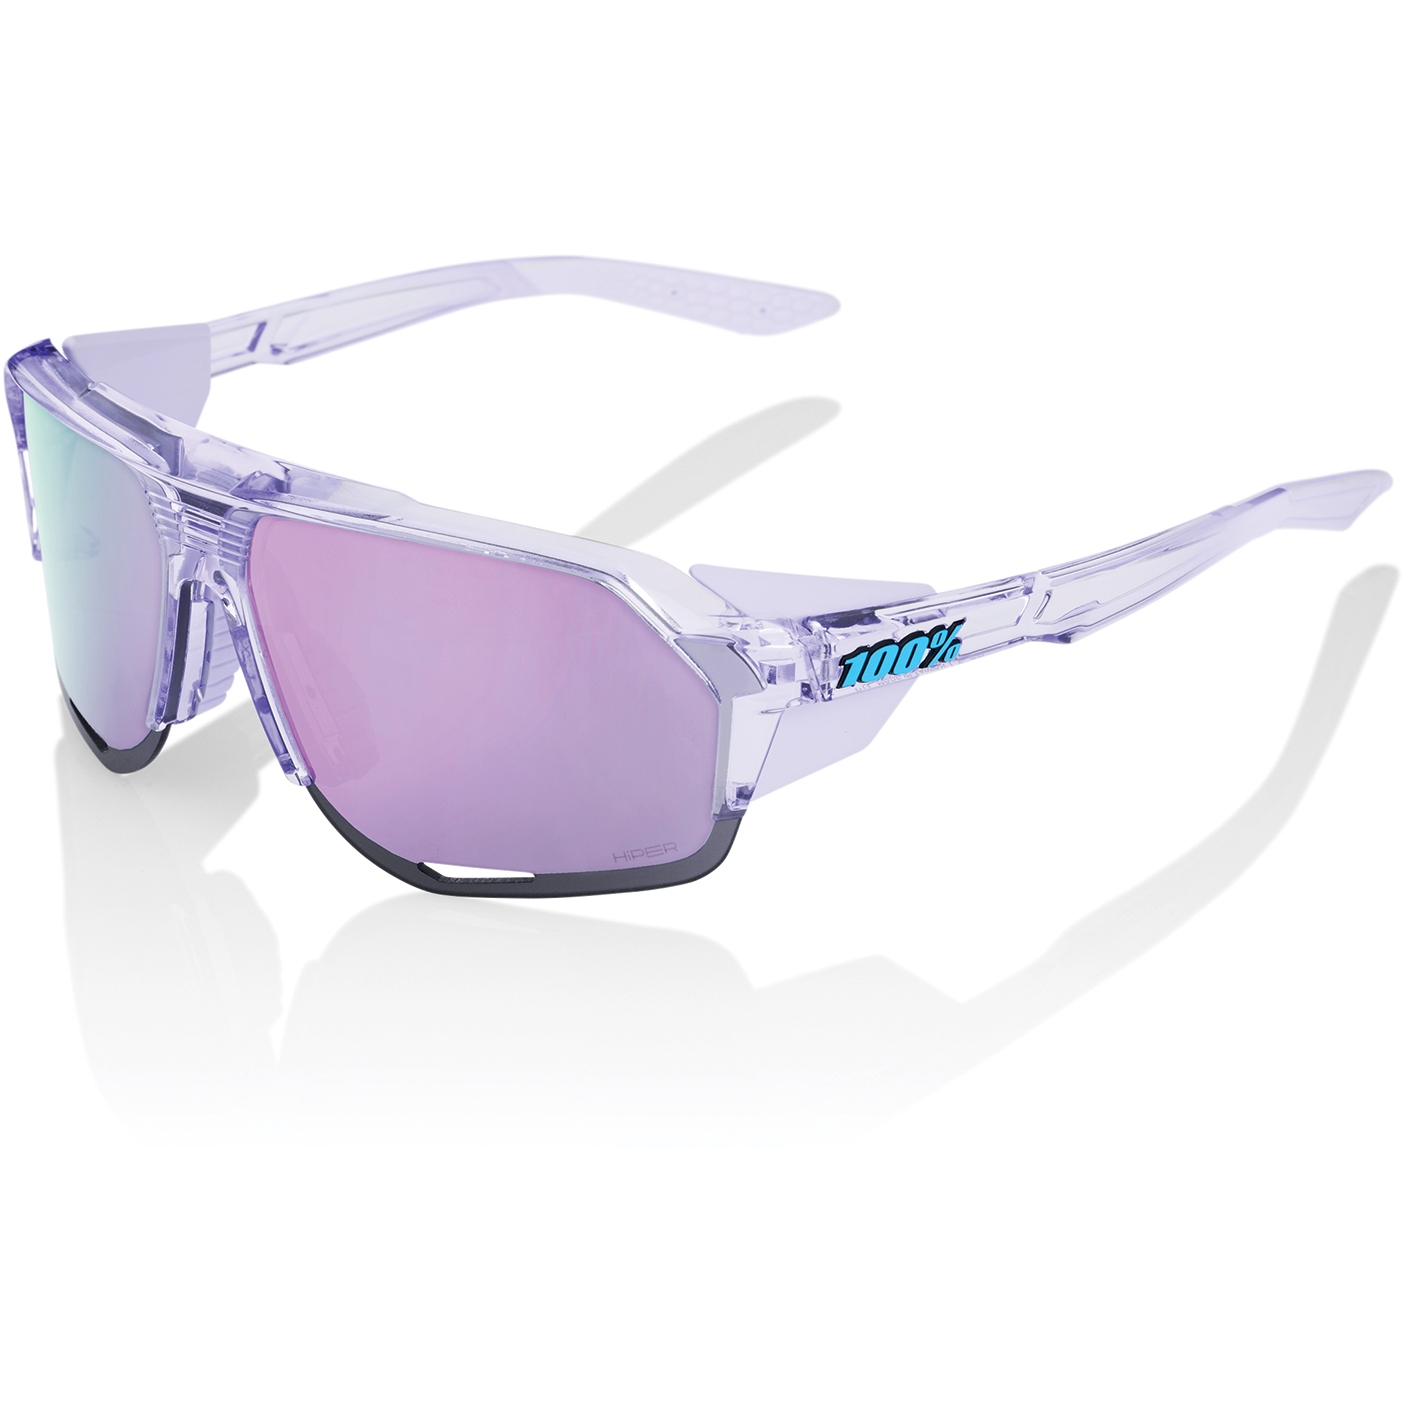 Produktbild von 100% Norvik Brille - HiPER Mirror Lens - Polished Translucent Lavender / Lavender + Clear